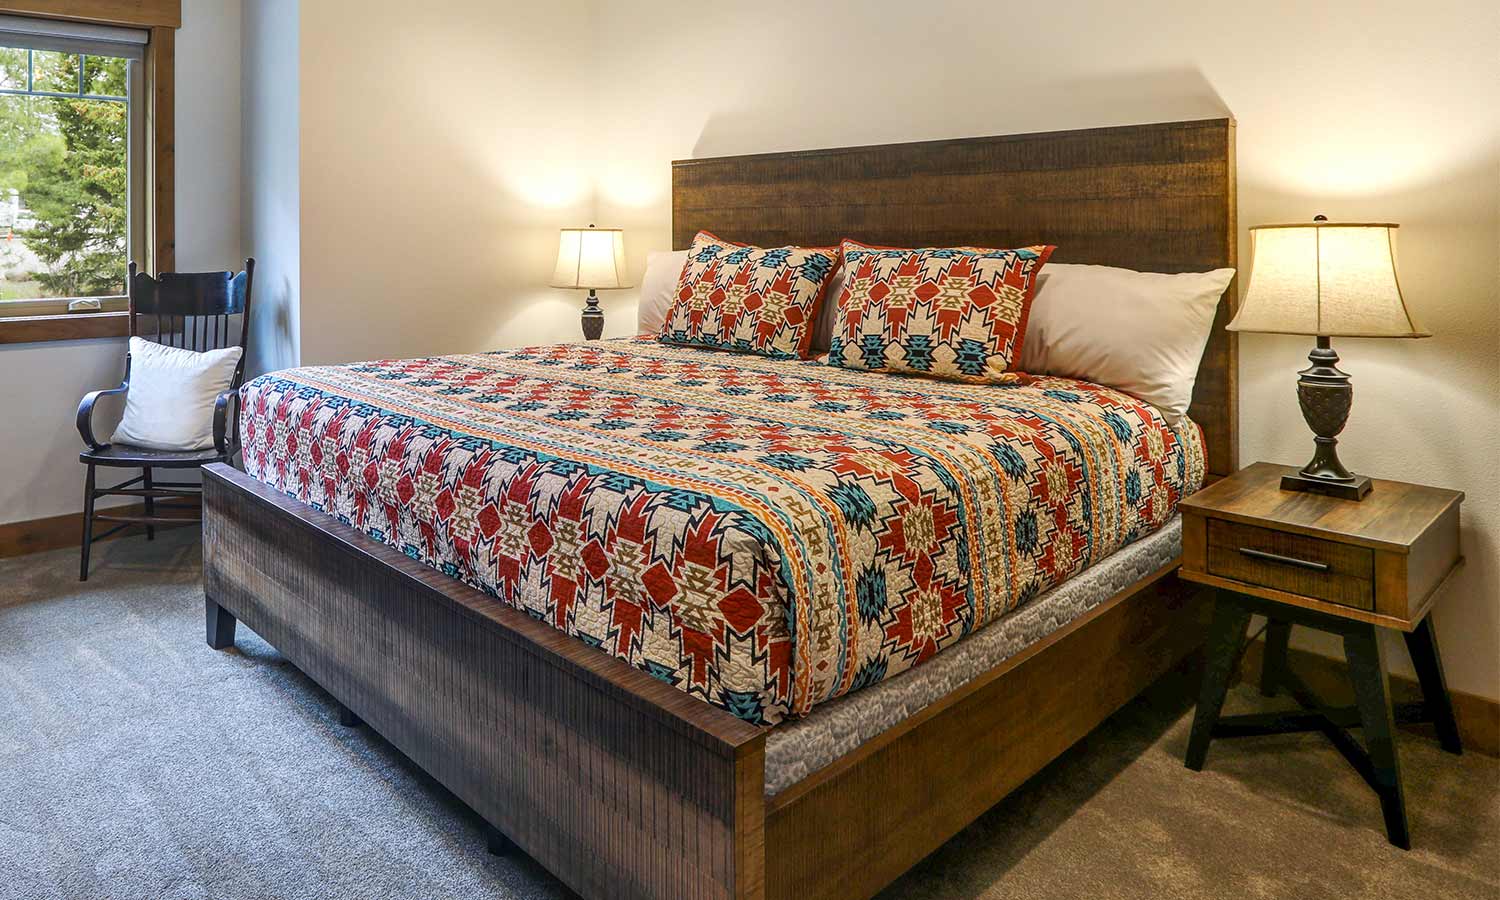 Una cama de paneles con altos rieles de madera en la cabecera y los pies con lados abiertos.